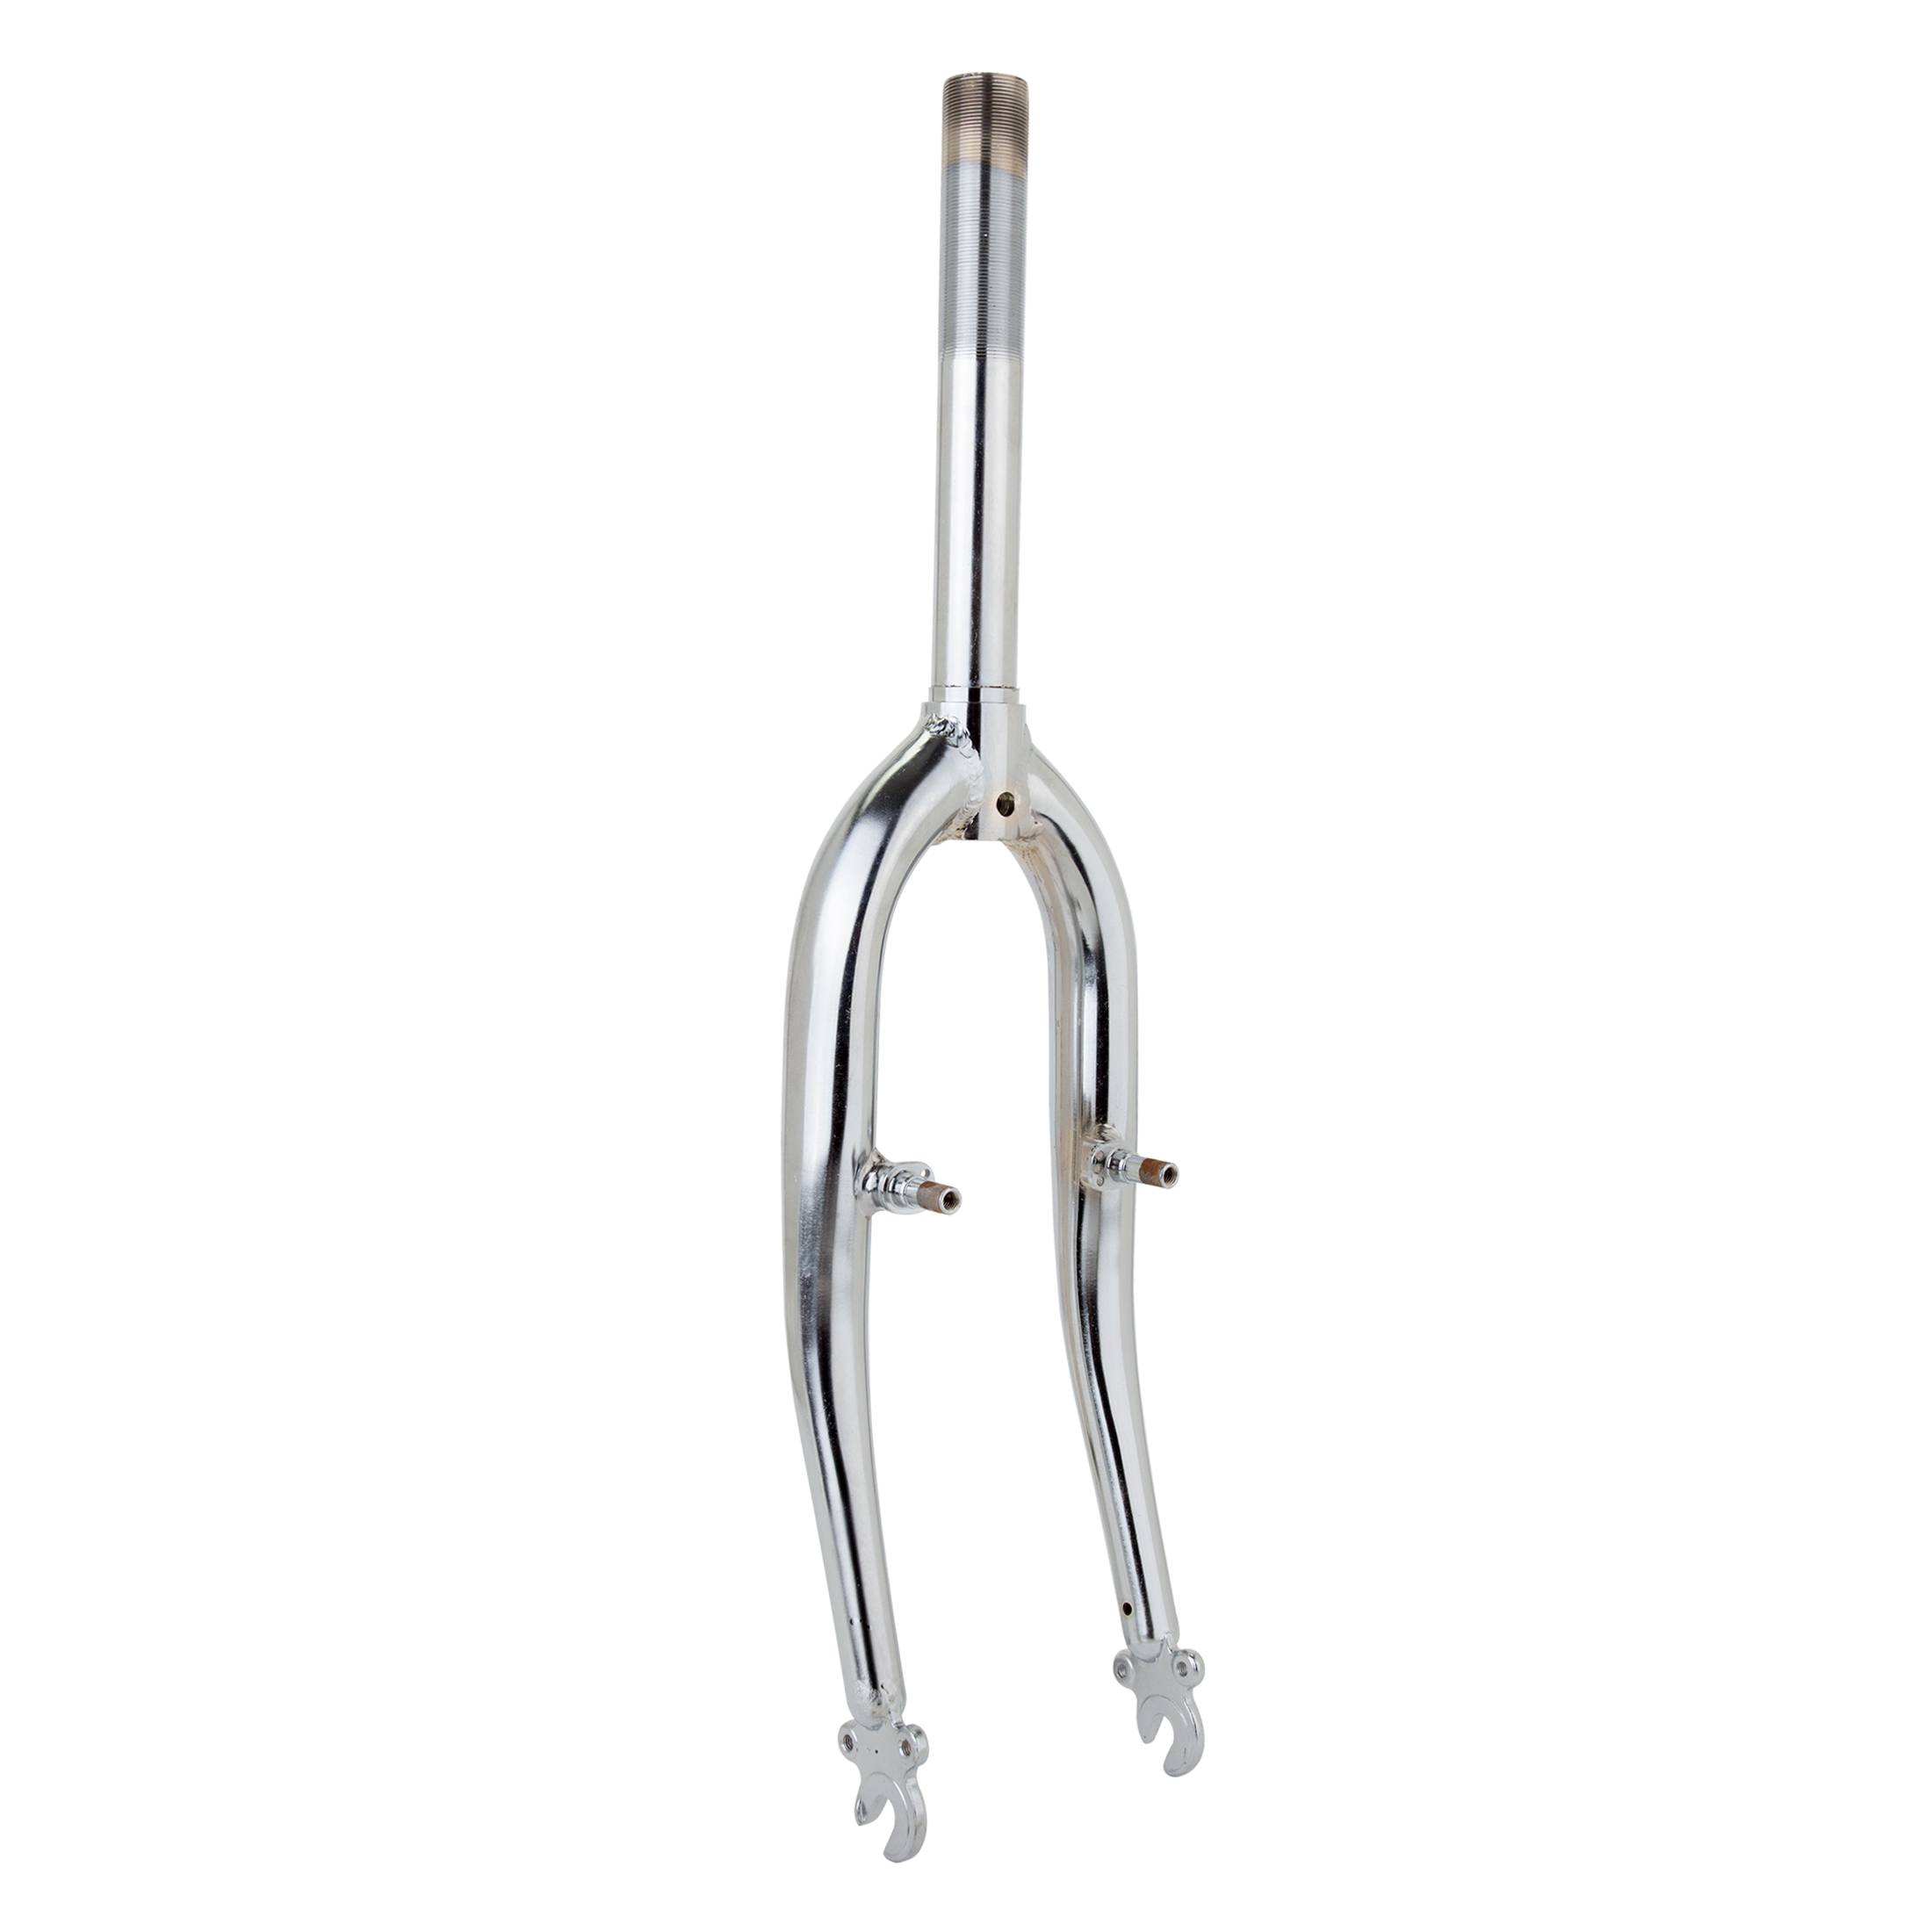 steel bicycle forks